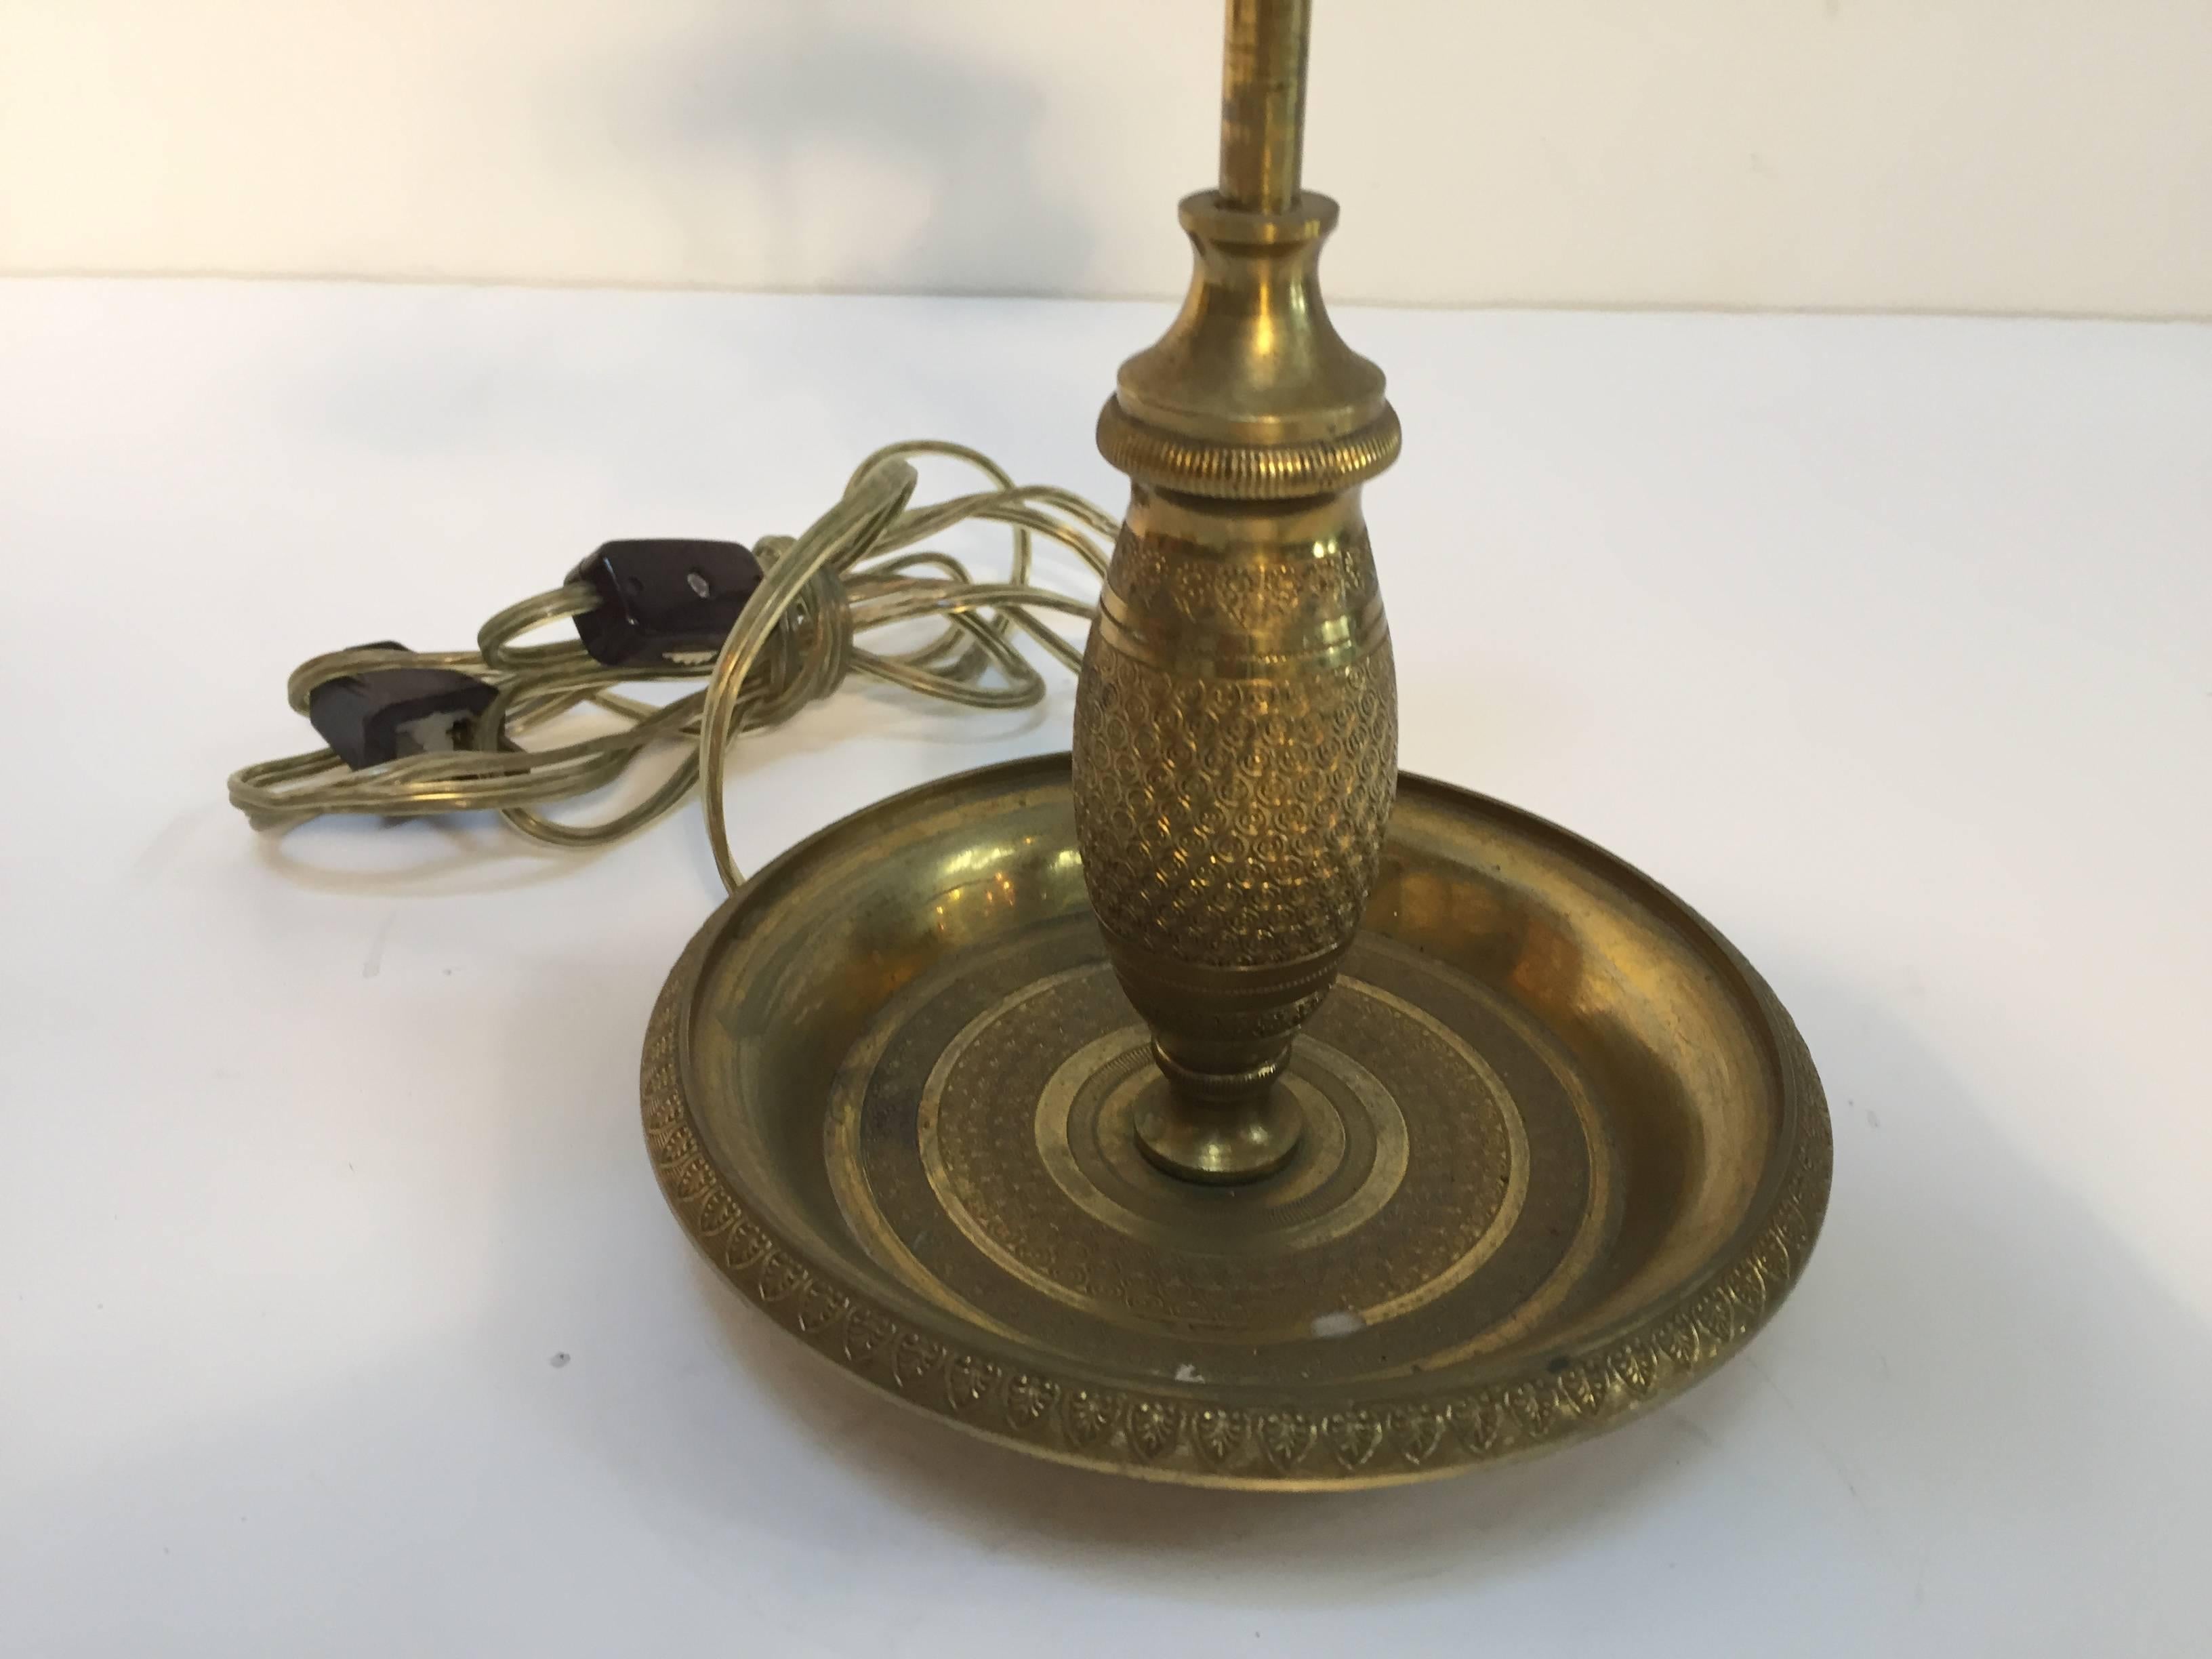 Französischer antiker Messingkandelaber aus dem späten 19. Jahrhundert, umgewandelt in eine Tischlampe.
Drei Kerzenhalter aus Messing, schöne gehämmerte Muster.
Die Höhe der Kerze ist einstellbar.
Die Kerzenhalter haben die Form eines